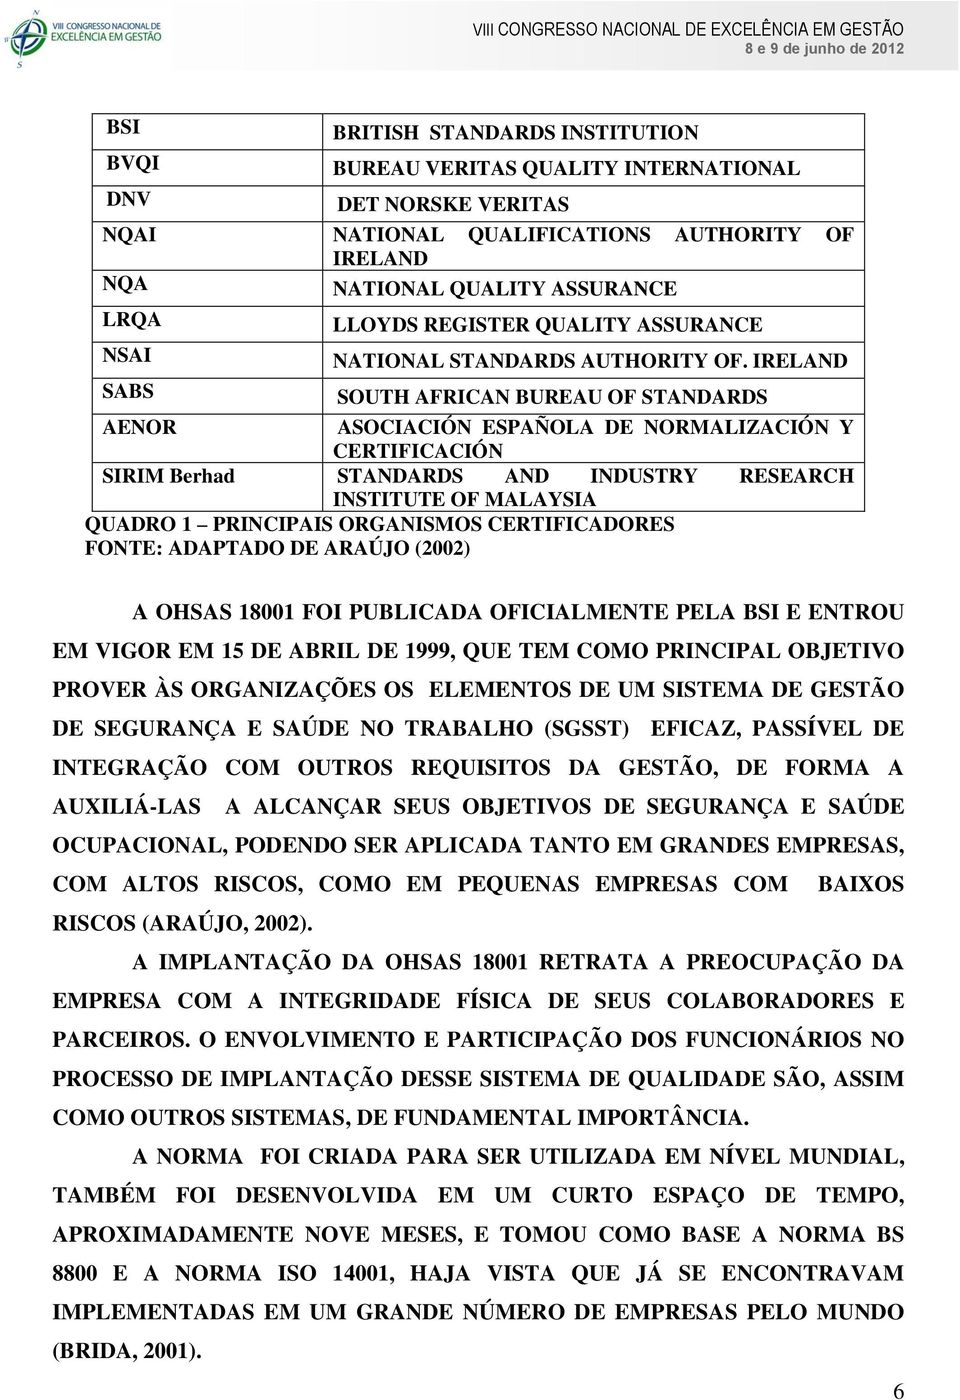 IRELAND SOUTH AFRICAN BUREAU OF STANDARDS AENOR ASOCIACIÓN ESPAÑOLA DE NORMALIZACIÓN Y CERTIFICACIÓN SIRIM Berhad STANDARDS AND INDUSTRY RESEARCH INSTITUTE OF MALAYSIA QUADRO 1 PRINCIPAIS ORGANISMOS